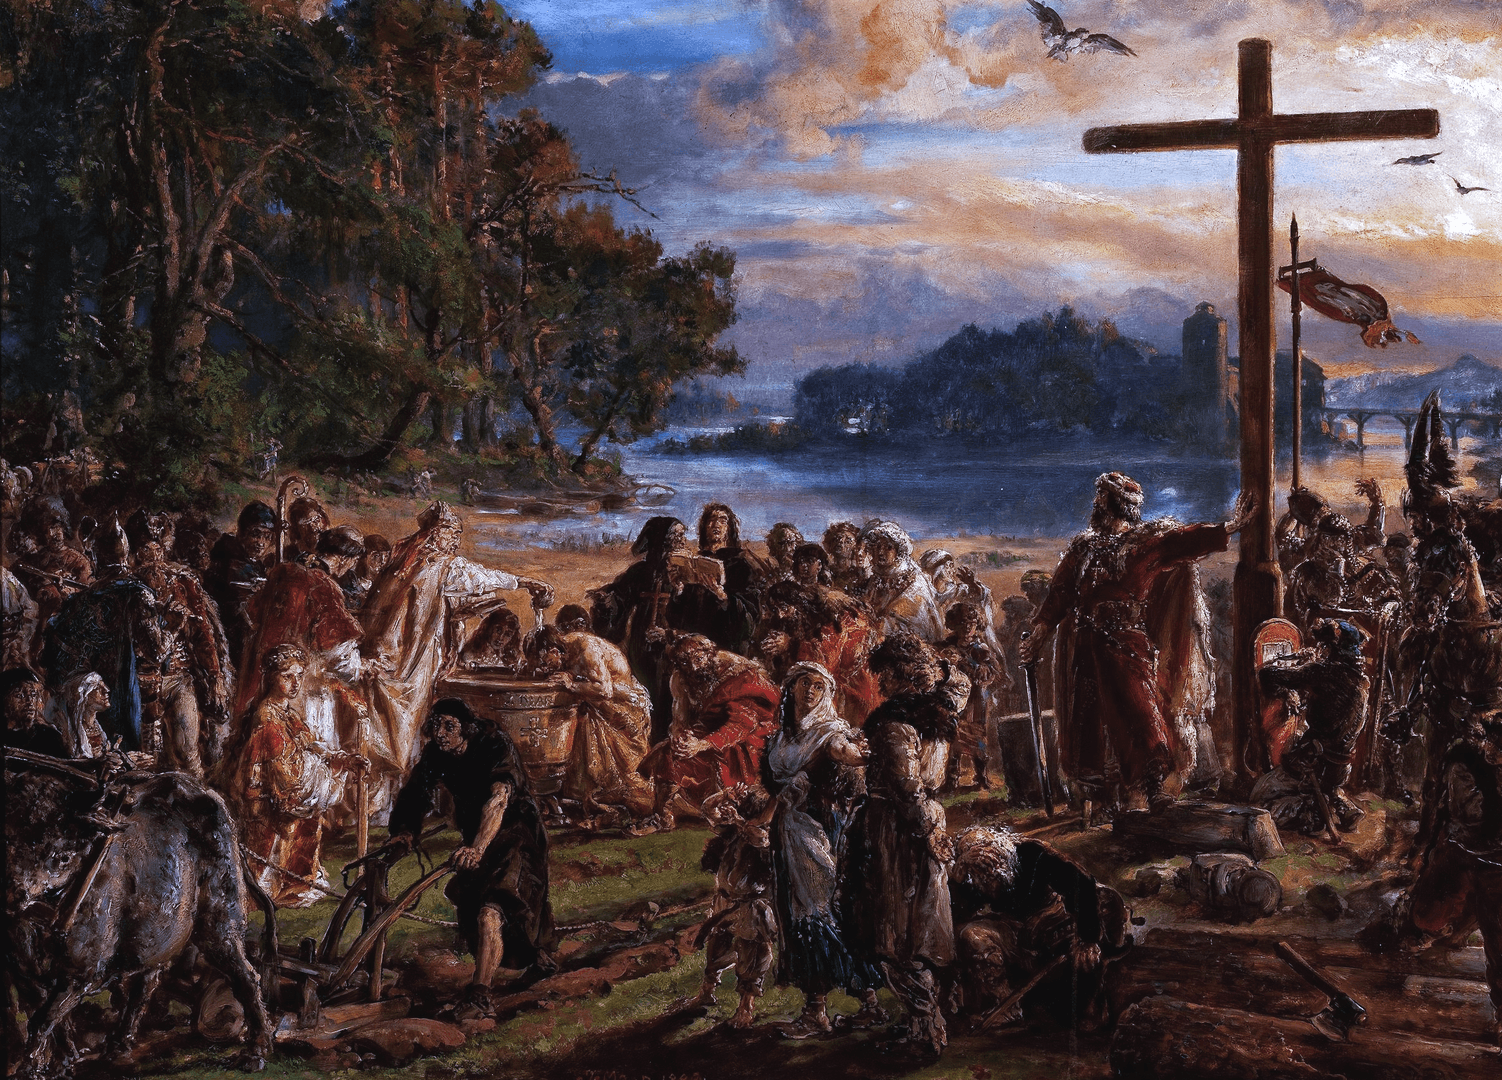 Zaprowadzenie chrześcijaństwa R.P. 965, obraz Jana Matejki z cyklu Dzieje cywilizacji w Polsce (1889)
